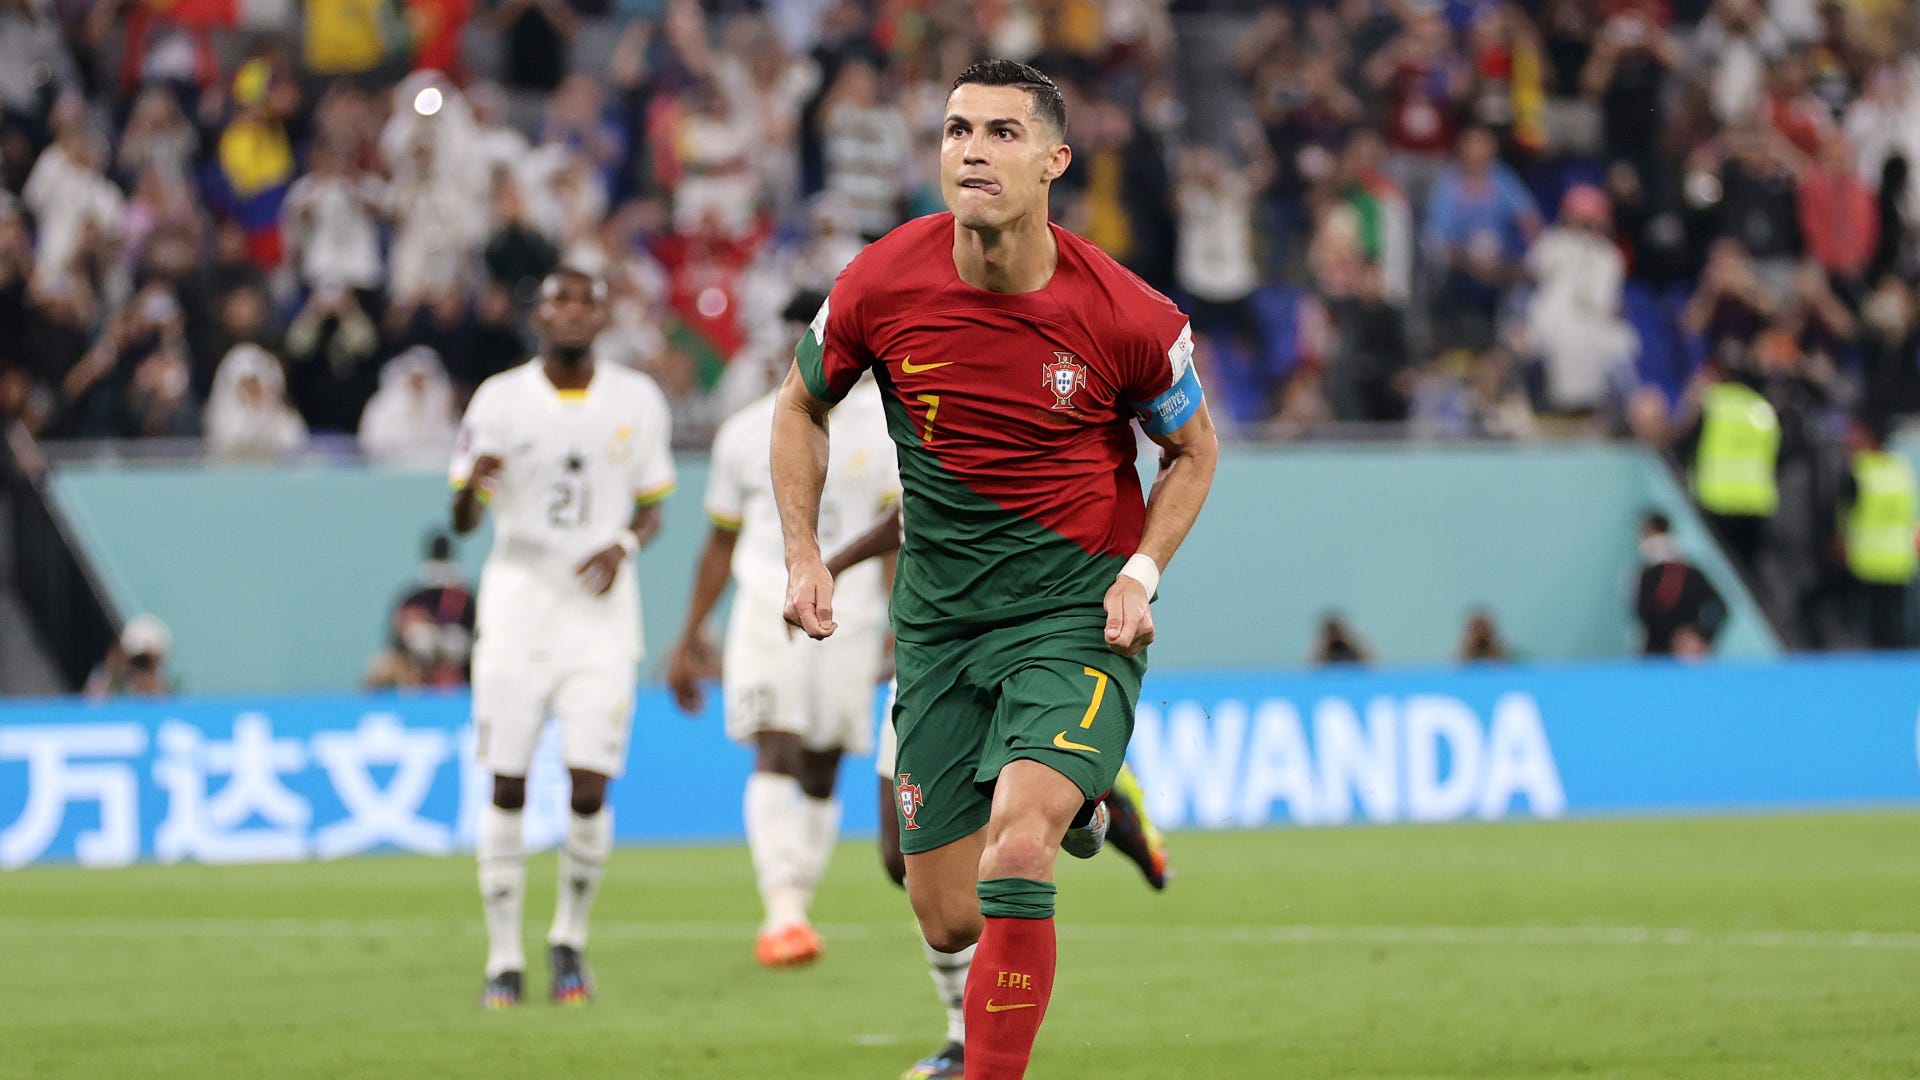 Copa do Mundo 2014: O gol mais triste de Cristiano Ronaldo, Esportes